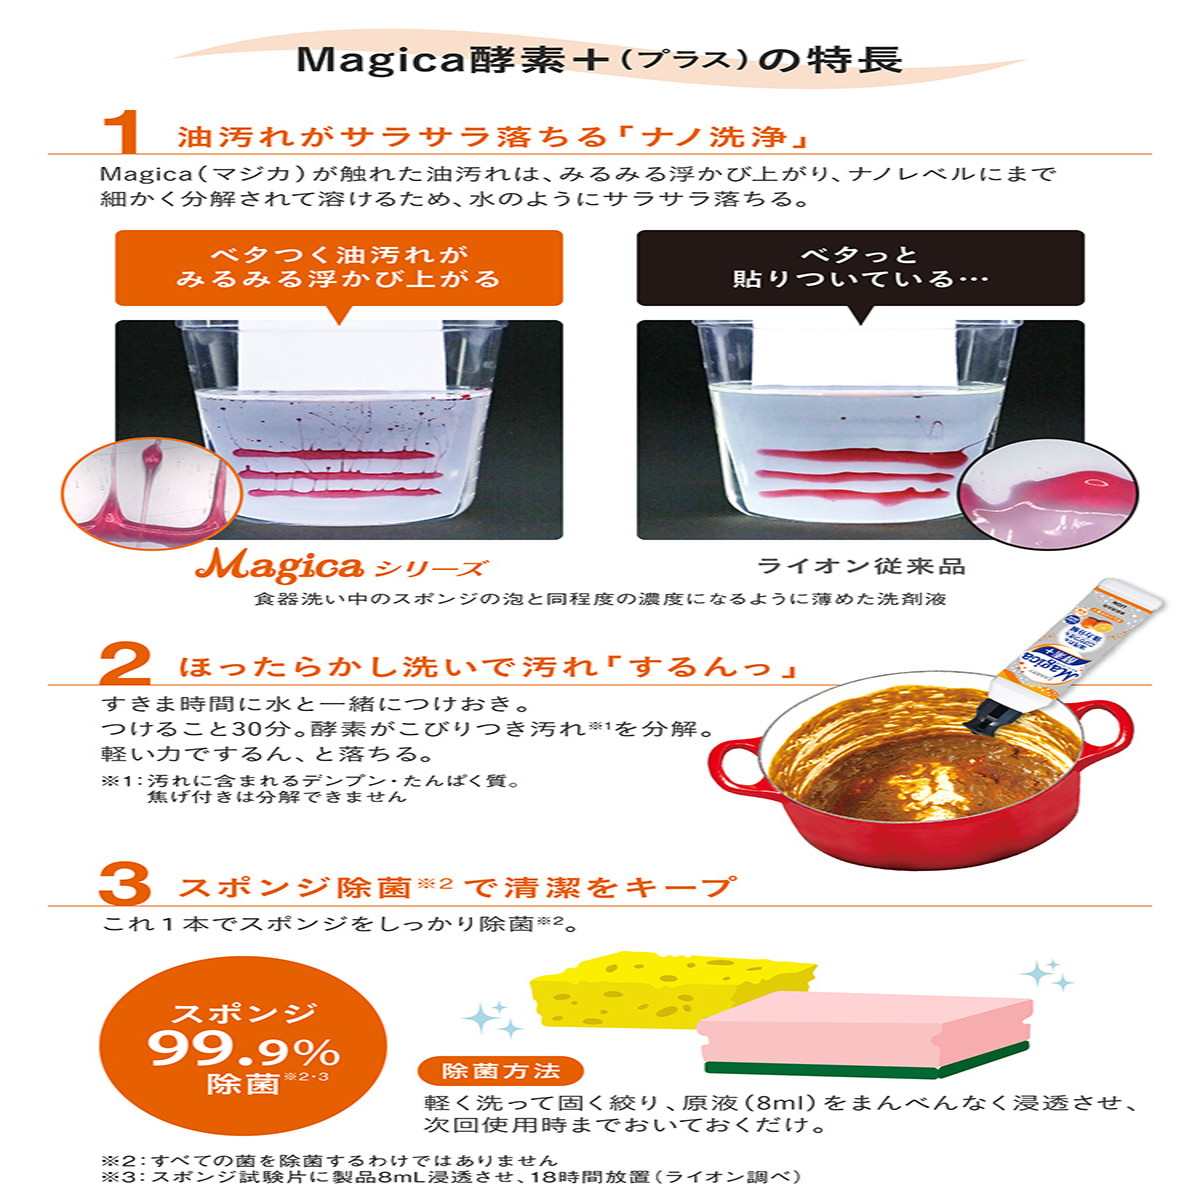 チャーミー CHARMY Magica マジカ 酵素プラス 食器用洗剤 フルーティオレンジの香り 詰め替え用 大型サイズ 880ml×8本